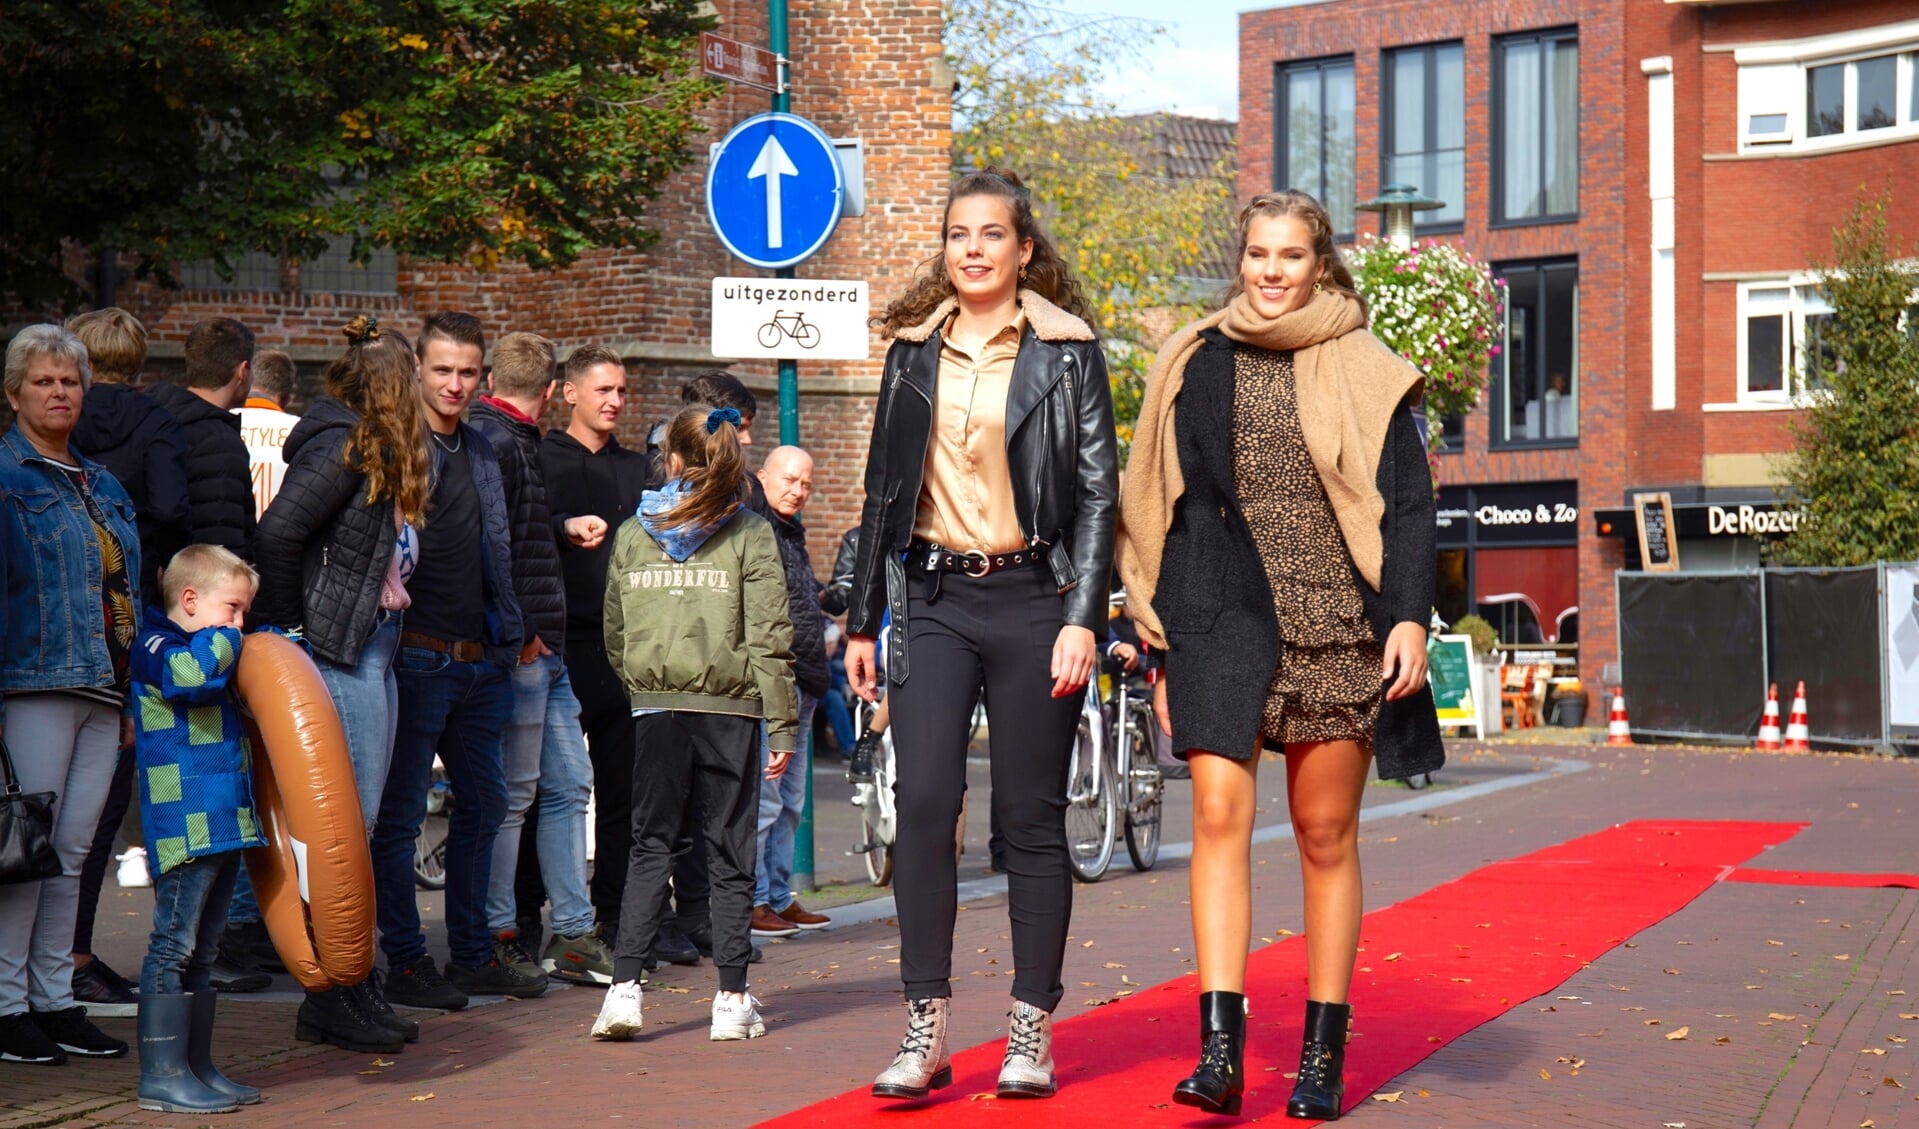 De rode loperdag is één van de activiteiten in het centrum van Barneveld, georganiseerd door de BMV. 